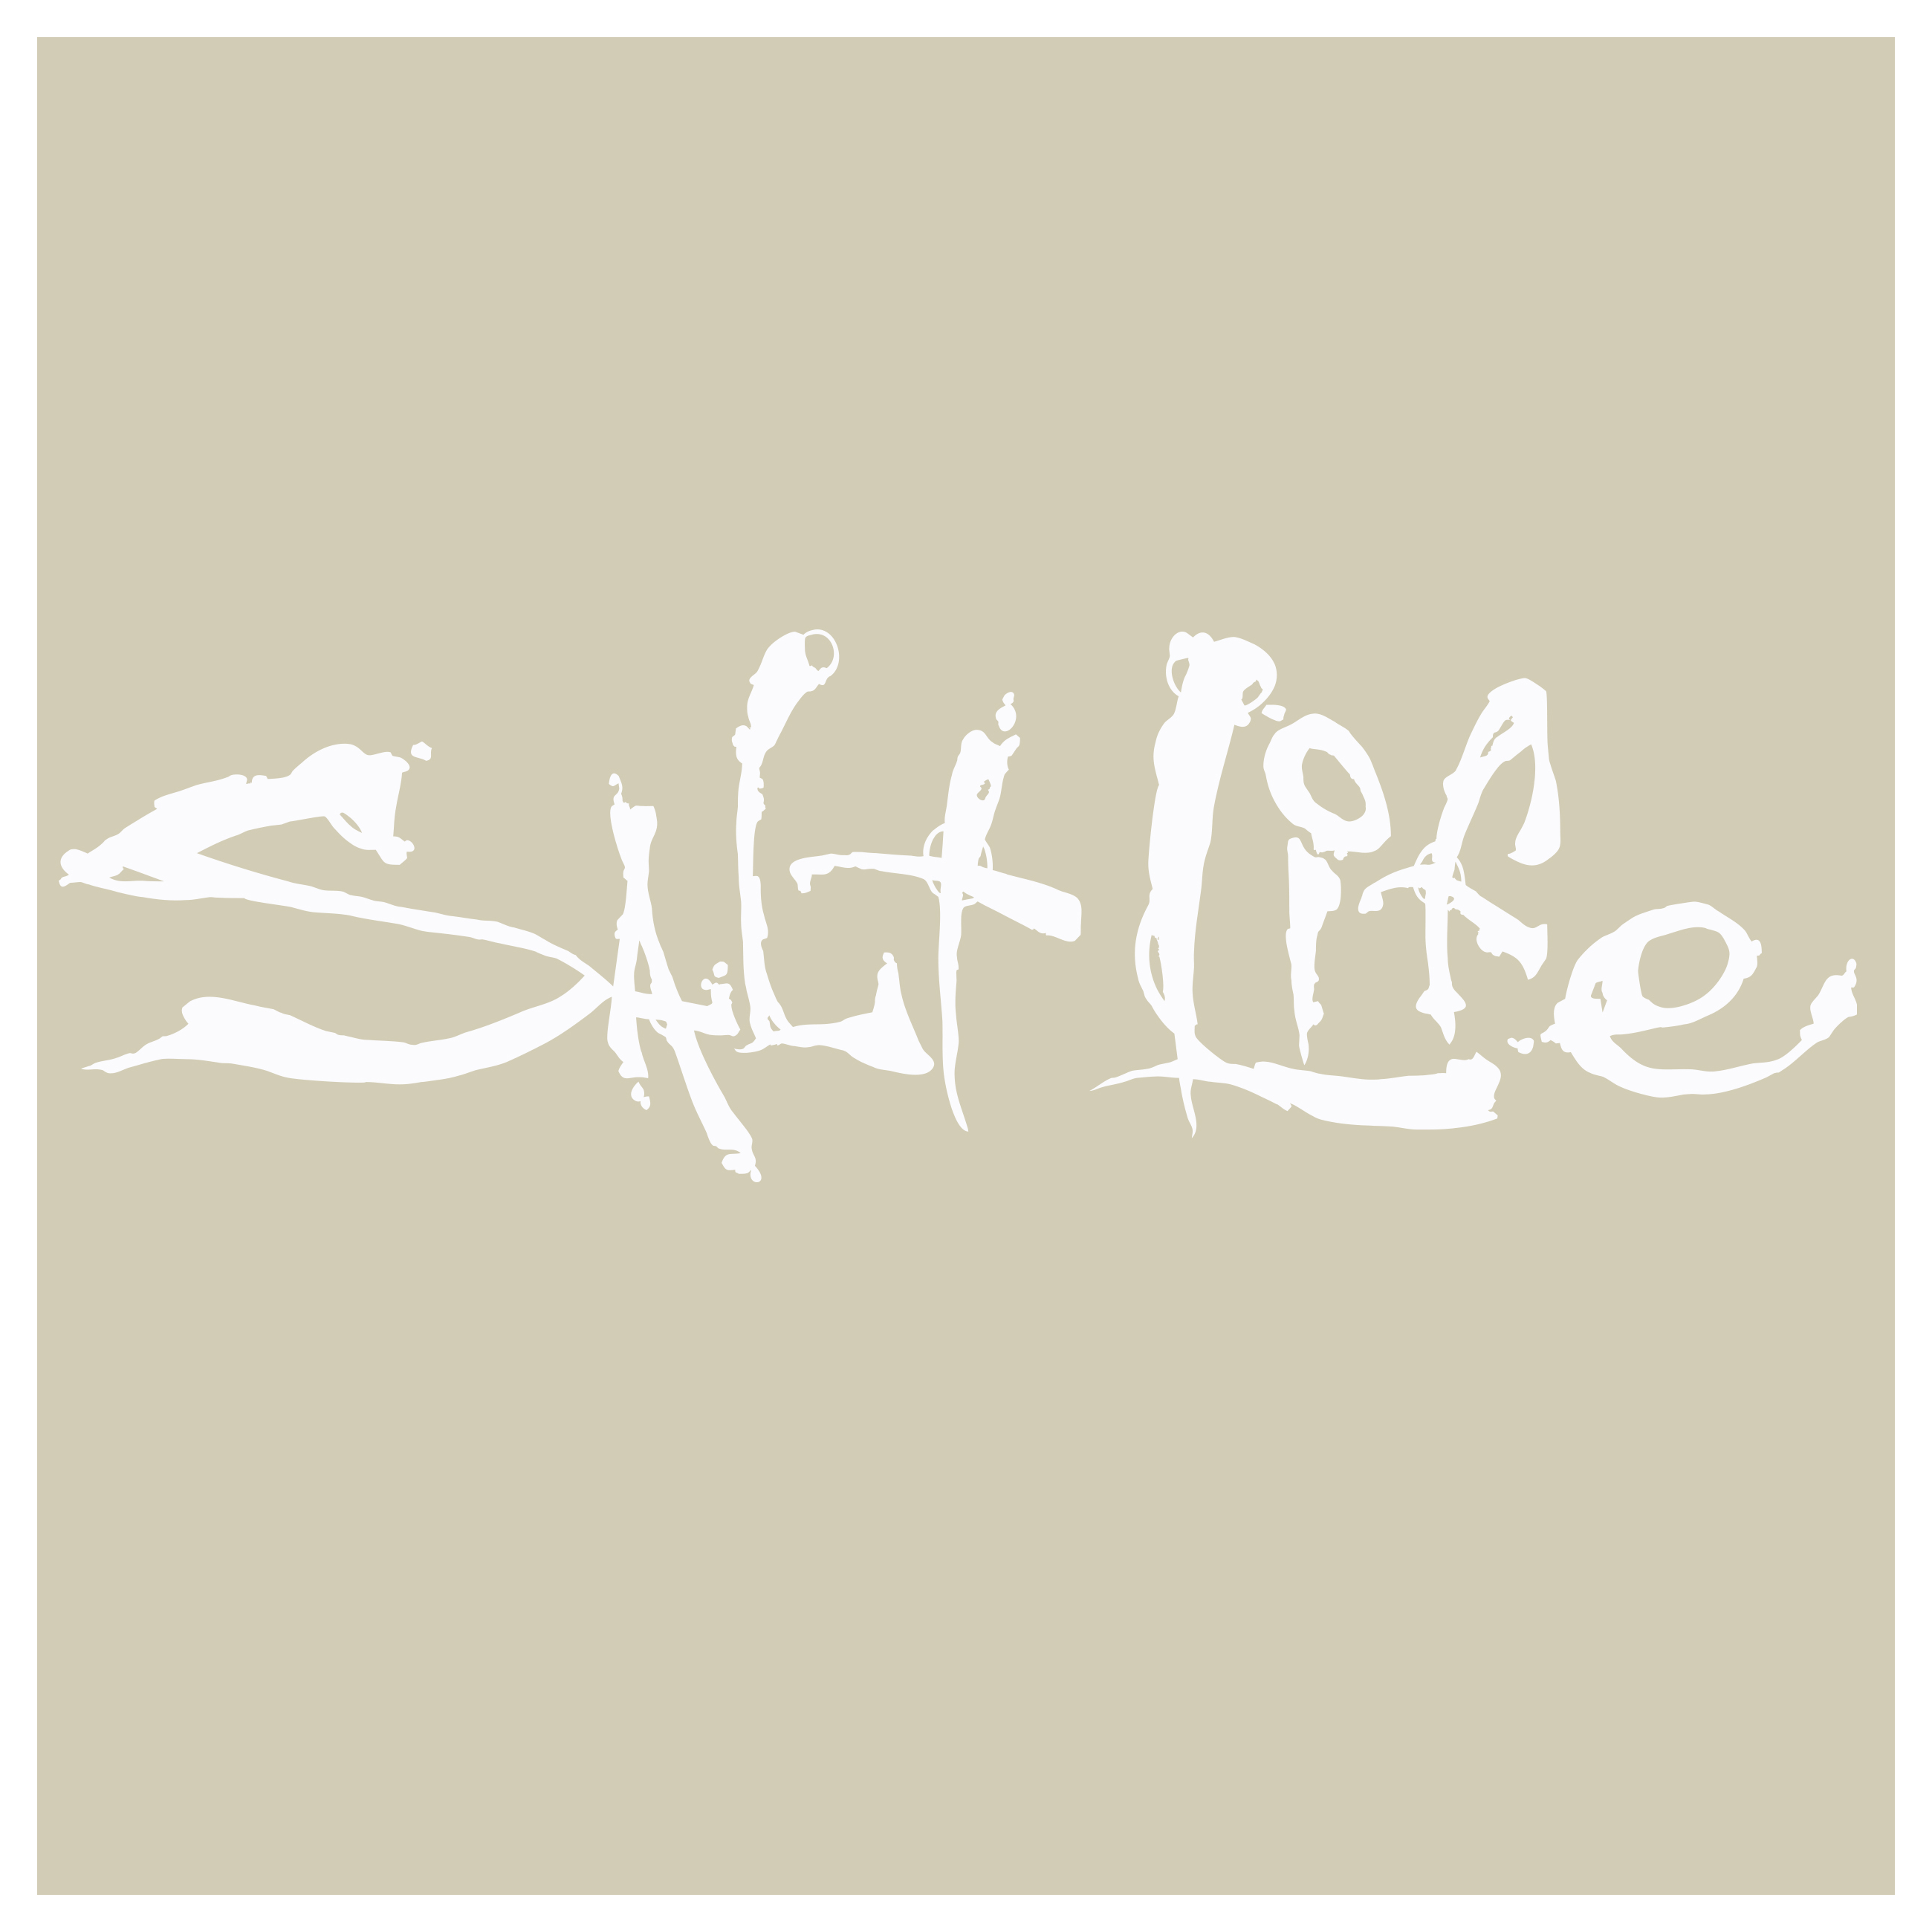 Salt Life Signature Logo Decal